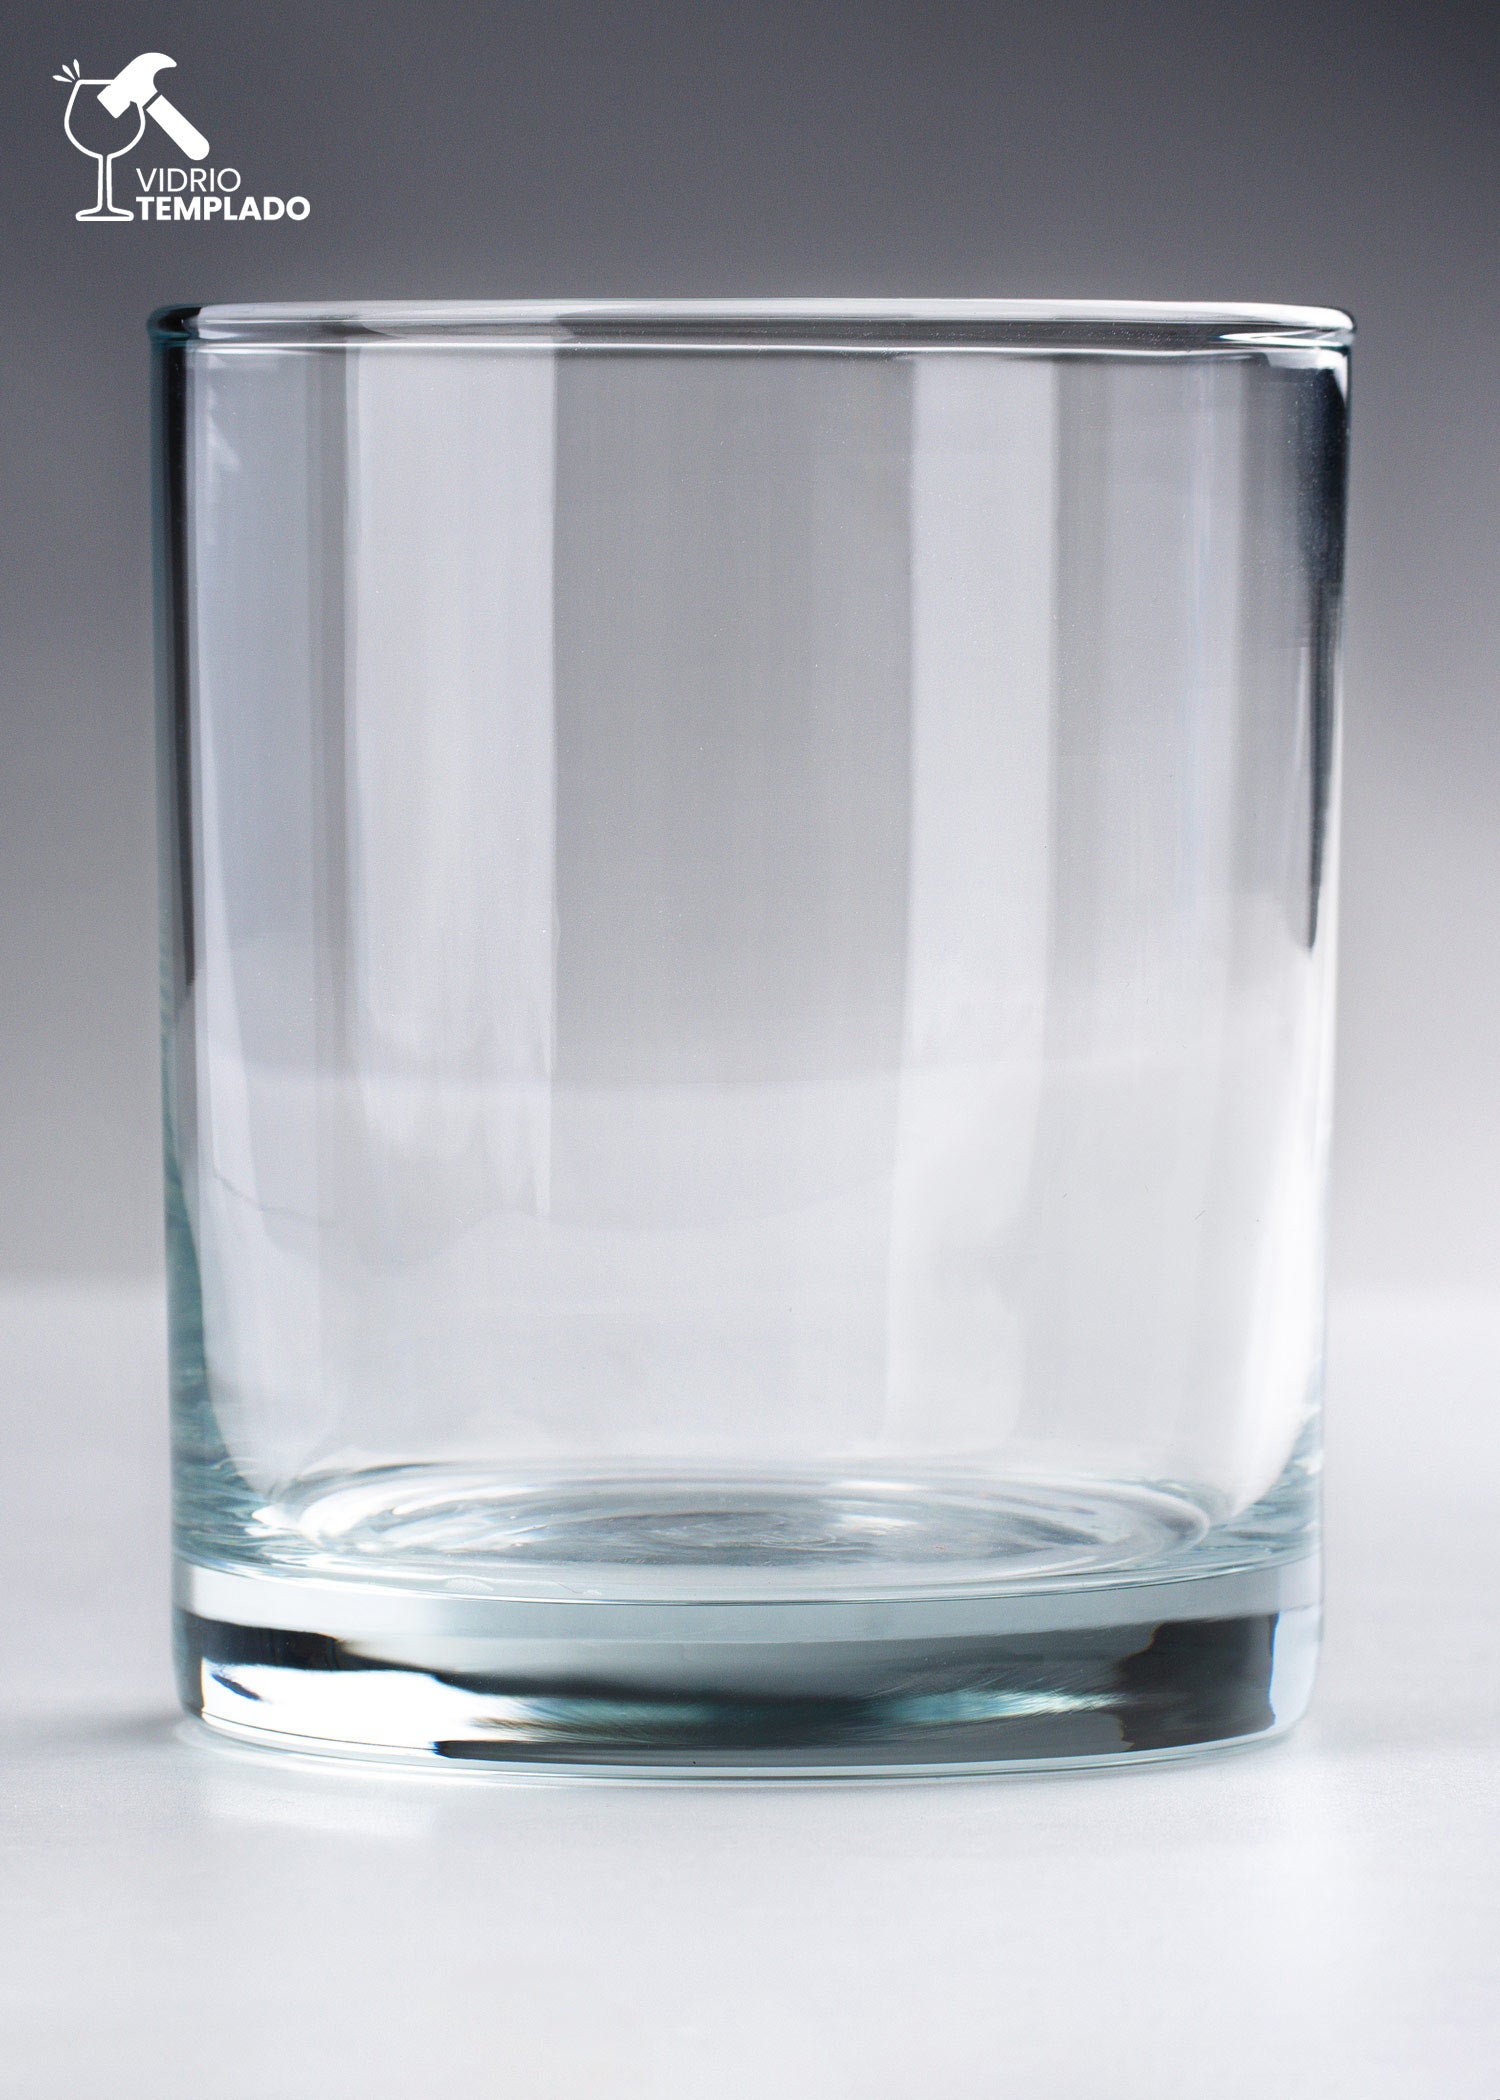 compra vaso de vidrio templado maha